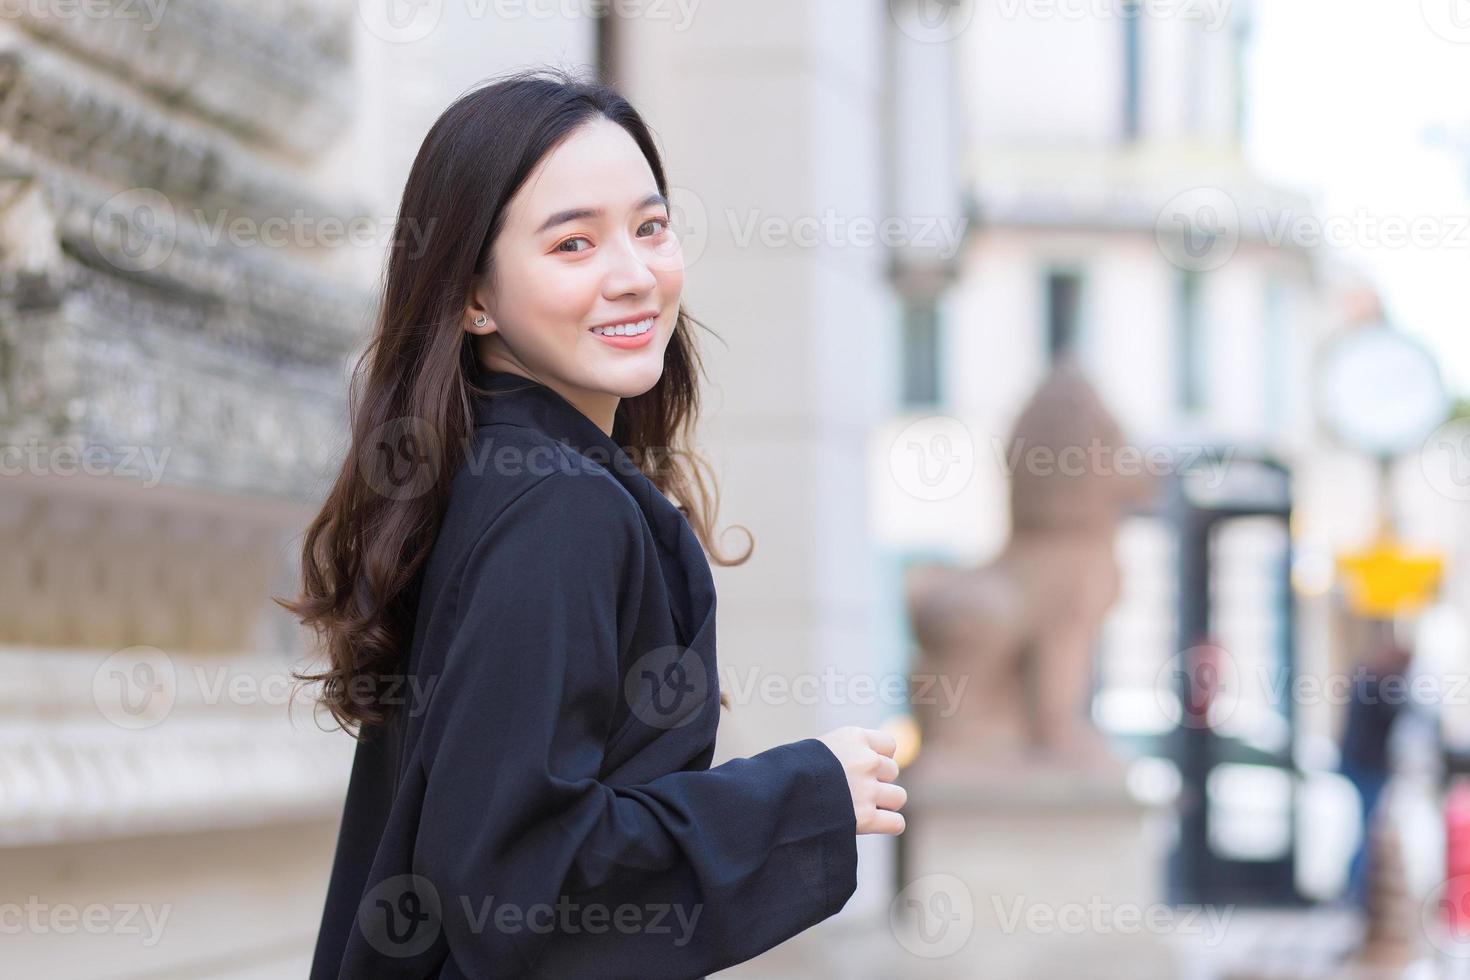 une photo d'une belle belle femme asiatique aux cheveux longs dans une robe noire souriant joyeusement marchant et regardant dans la ville à l'extérieur.